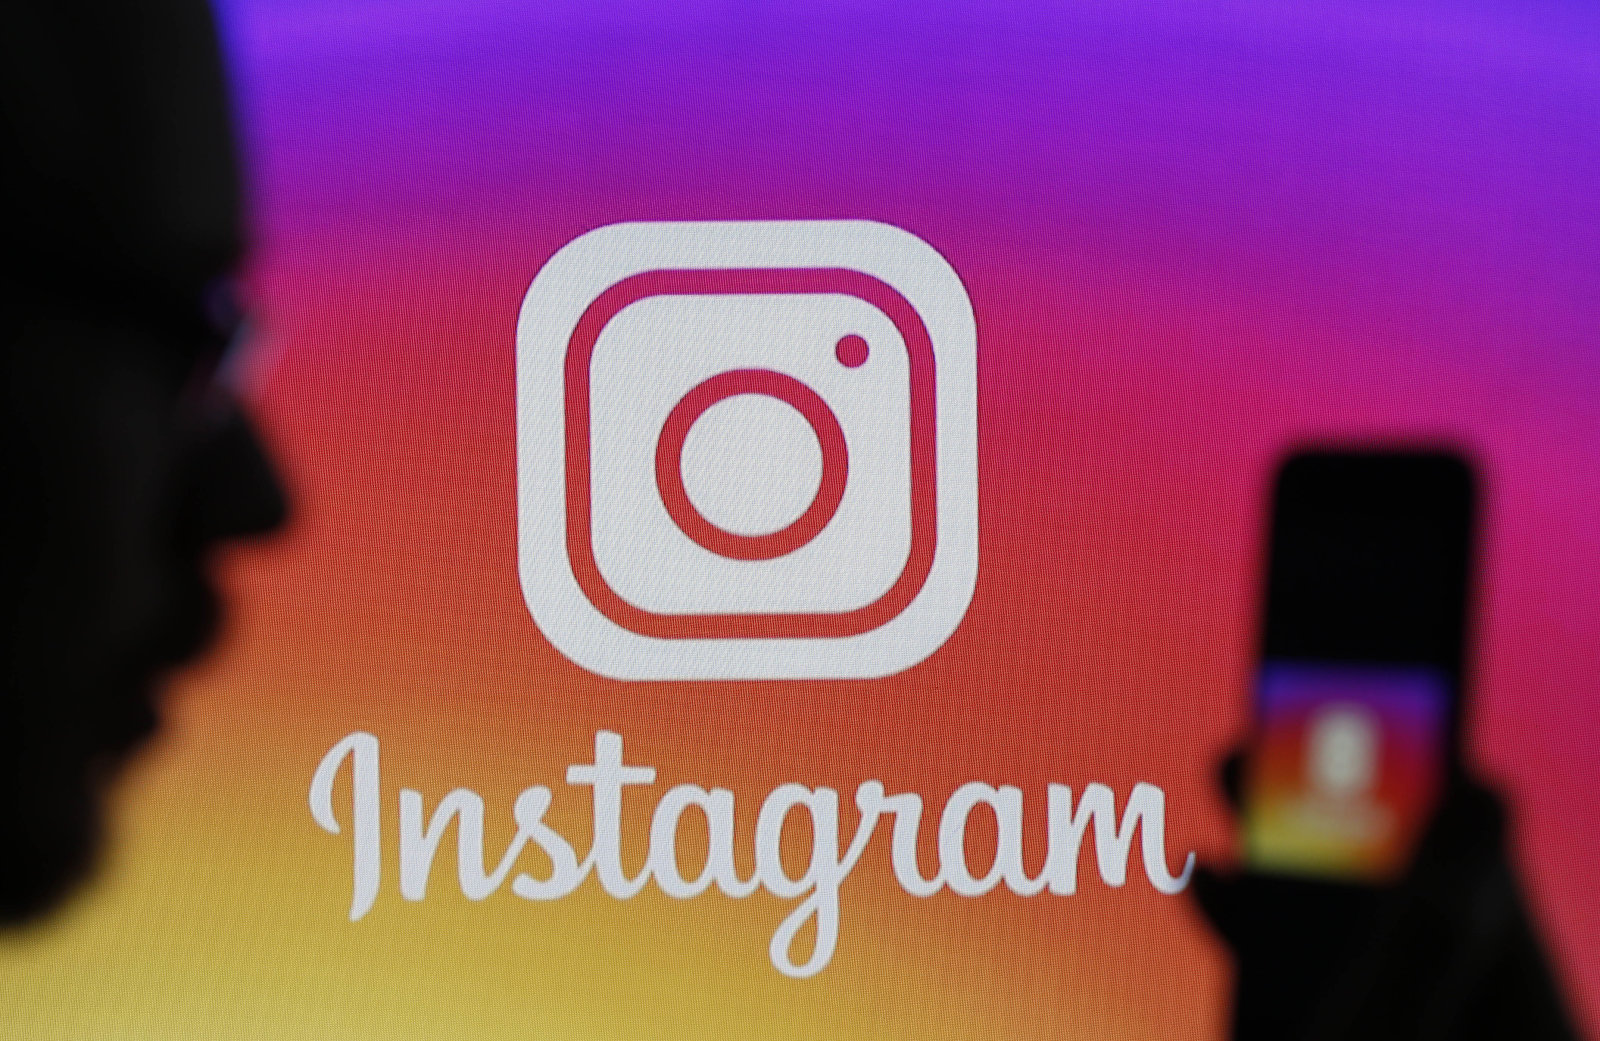 Instagram empieza a combatir los mensajes de odio: ahora podrás ocultarlos